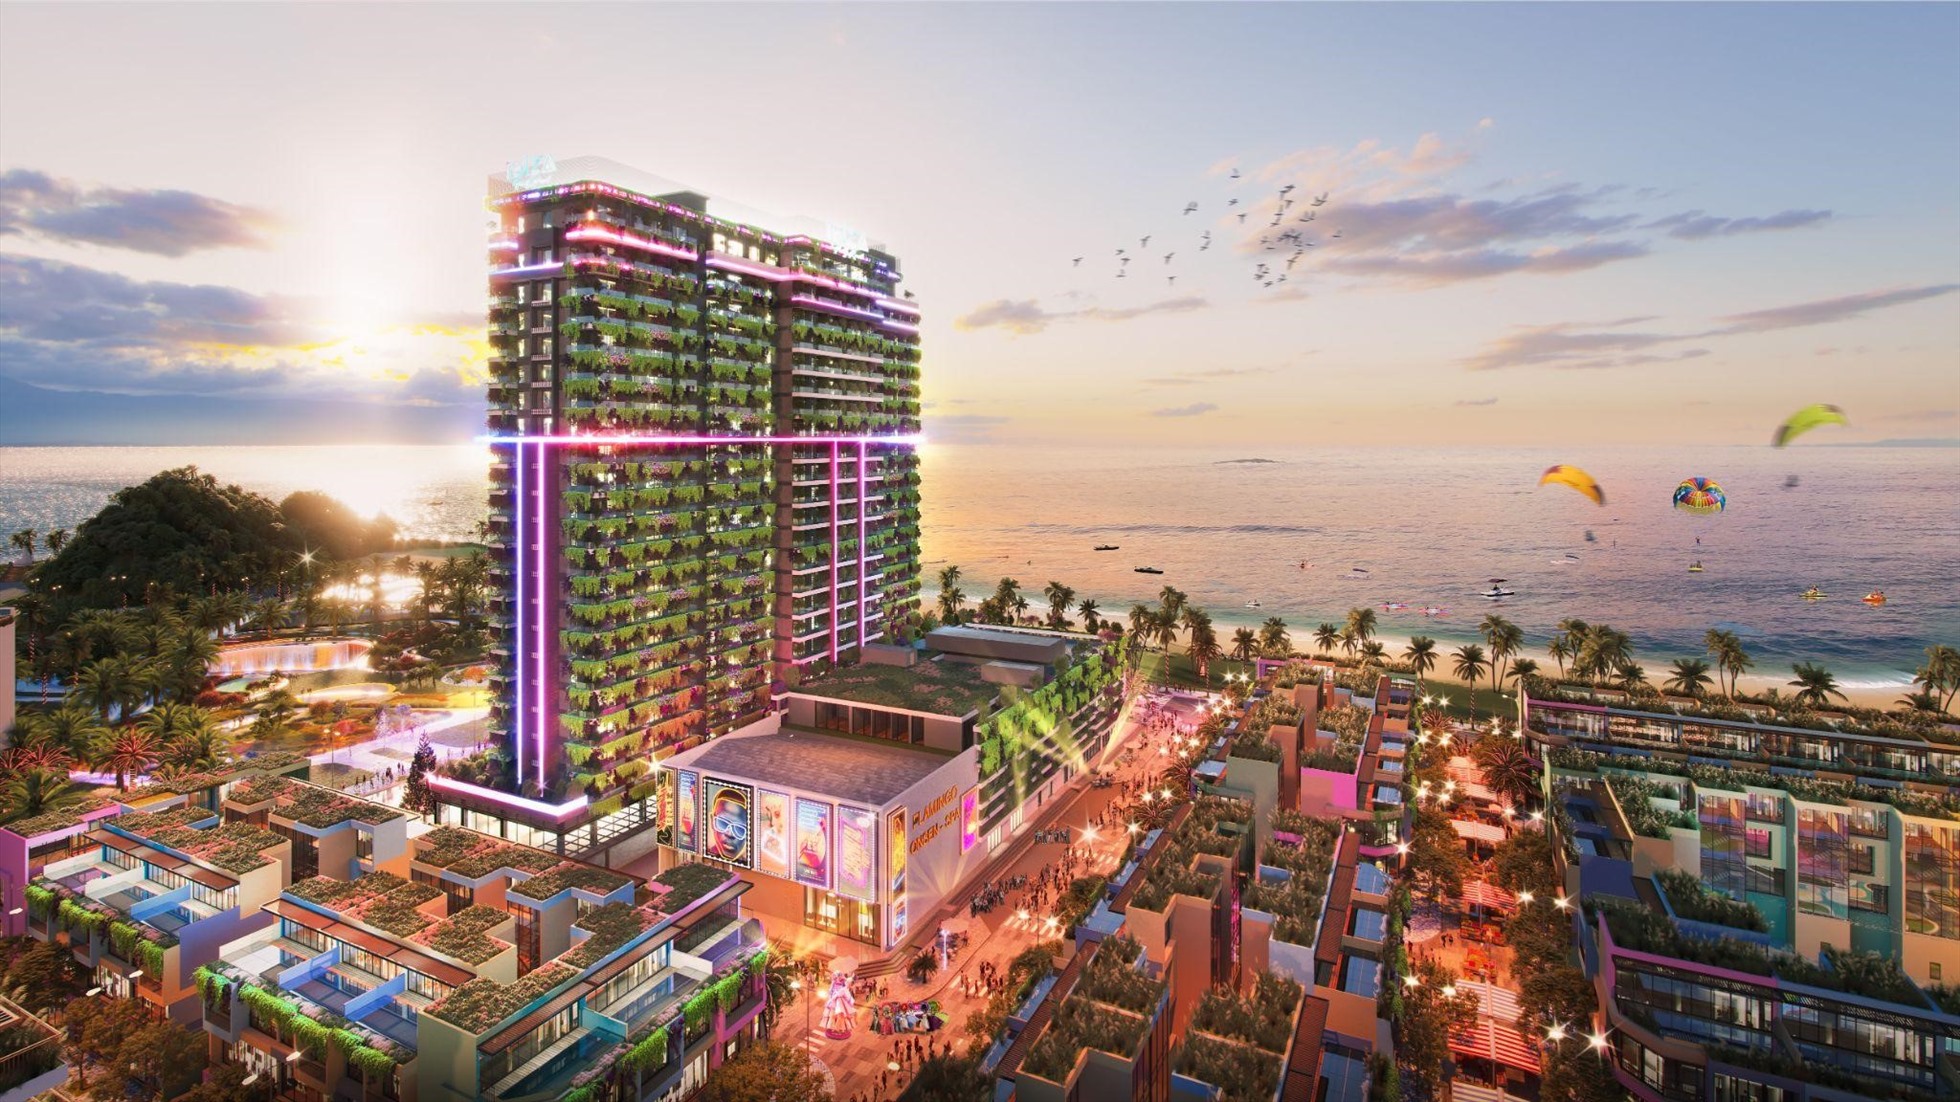 Toà tháp tiệc tùng Ibiza Party Resort và Trung tâm nghỉ dưỡng Bốn Mùa - The Seasons Center nằm cạnh nhau tại trung tâm của quần thể dự án Flamingo Ibiza 1. Ảnh Flamingo